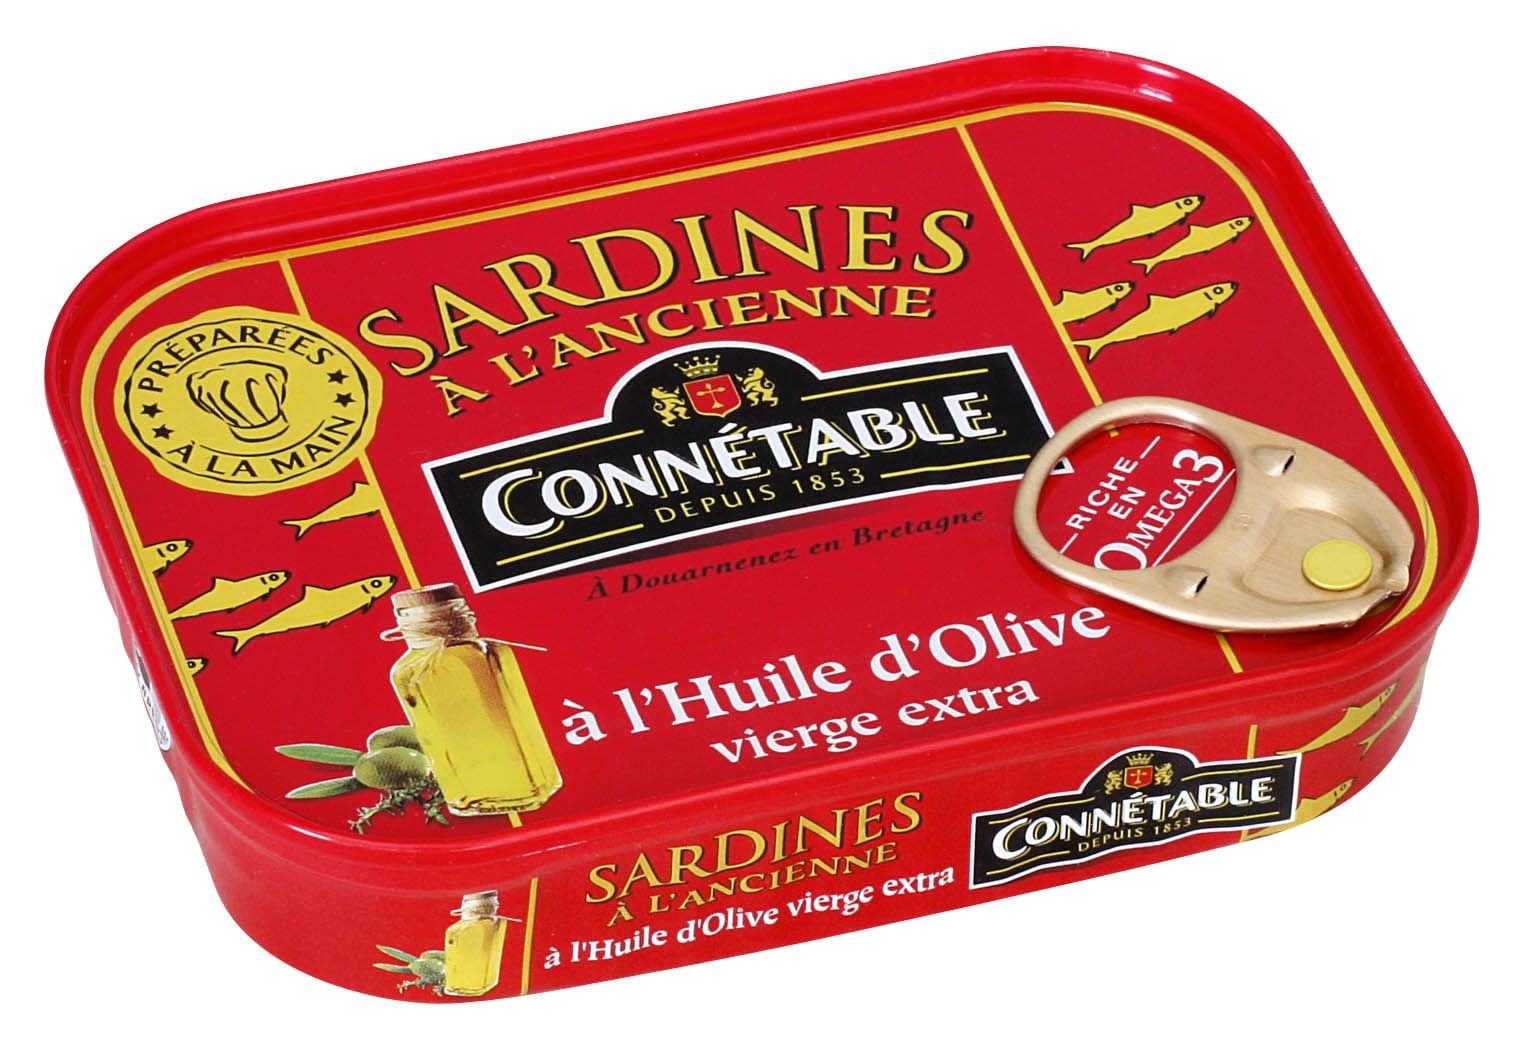 Archives des Sardines en boite - Maison Masse